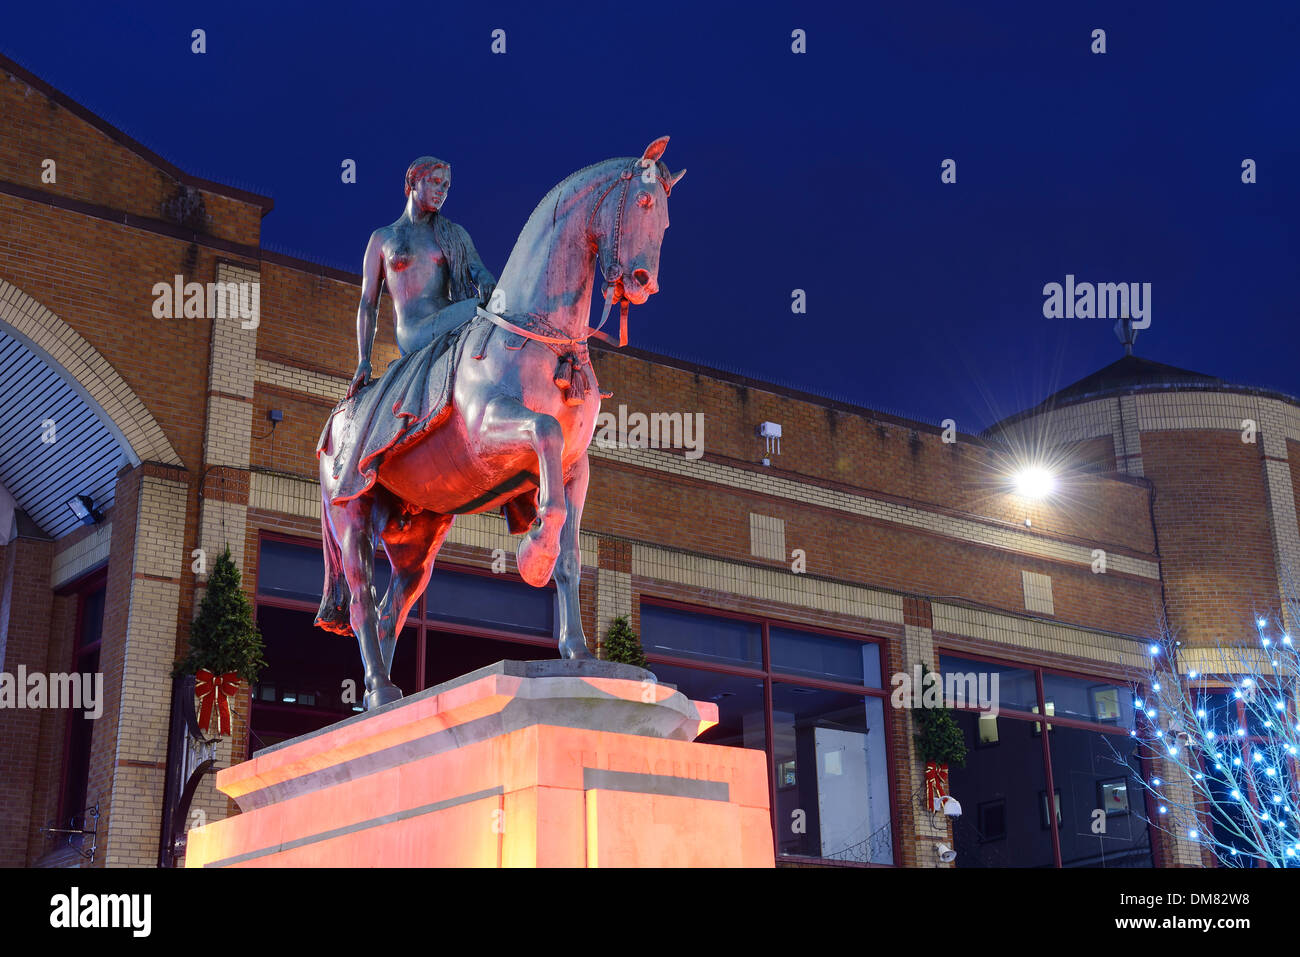 Die Statue von Lady Godiva in Coventry Stadtzentrum nachts beleuchtet Stockfoto